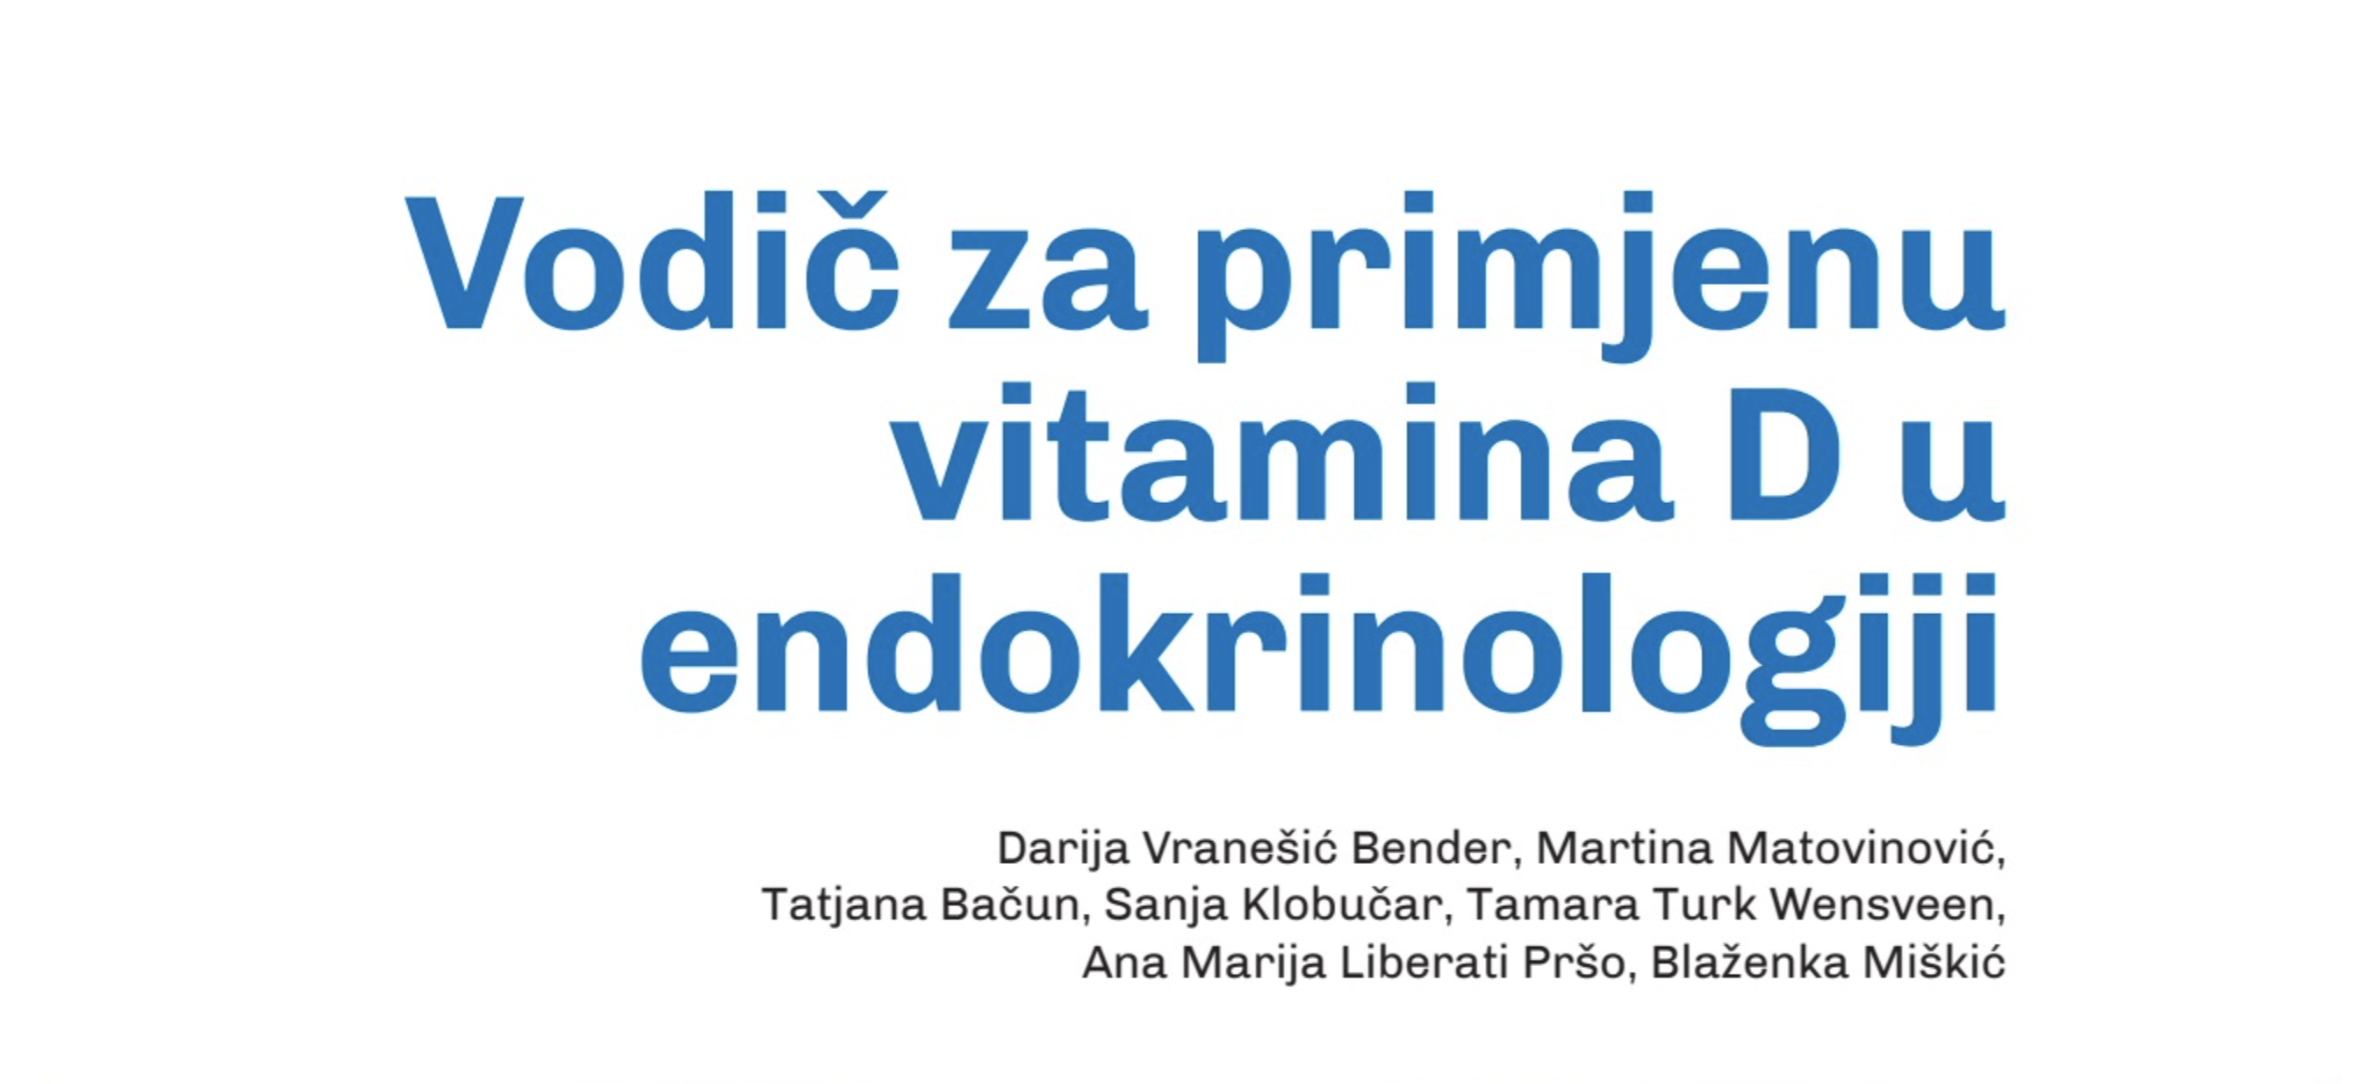 Vodič za primjenu vitamina D u endokrinologiji